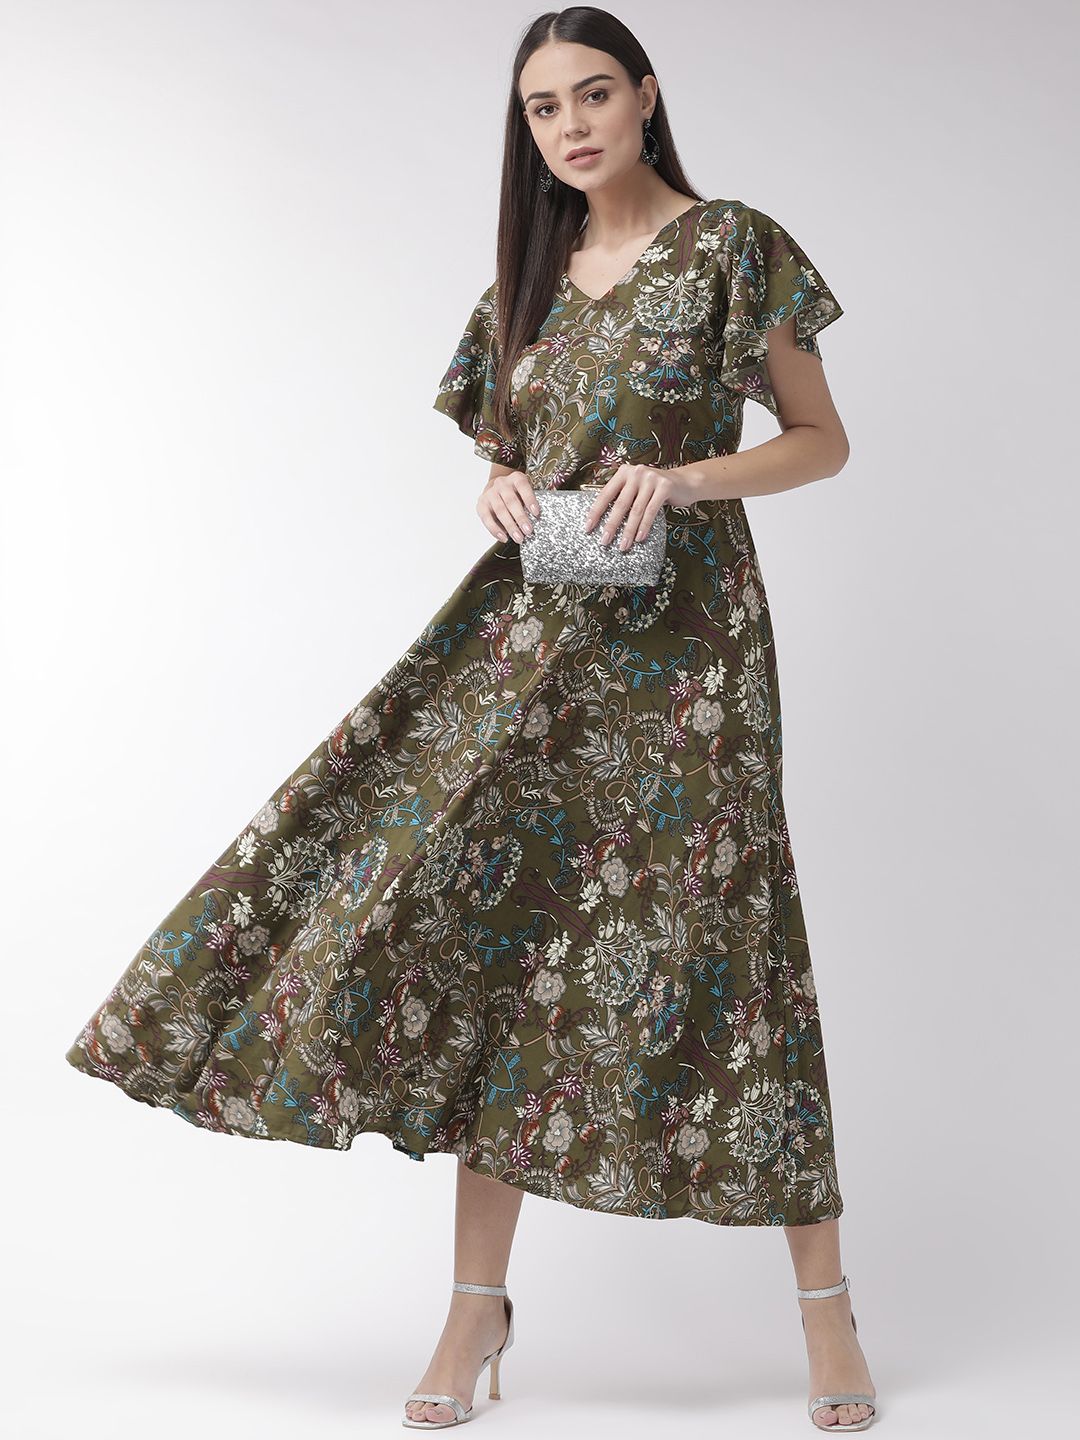 U&F Women Olive Green Solid Maxi Dress